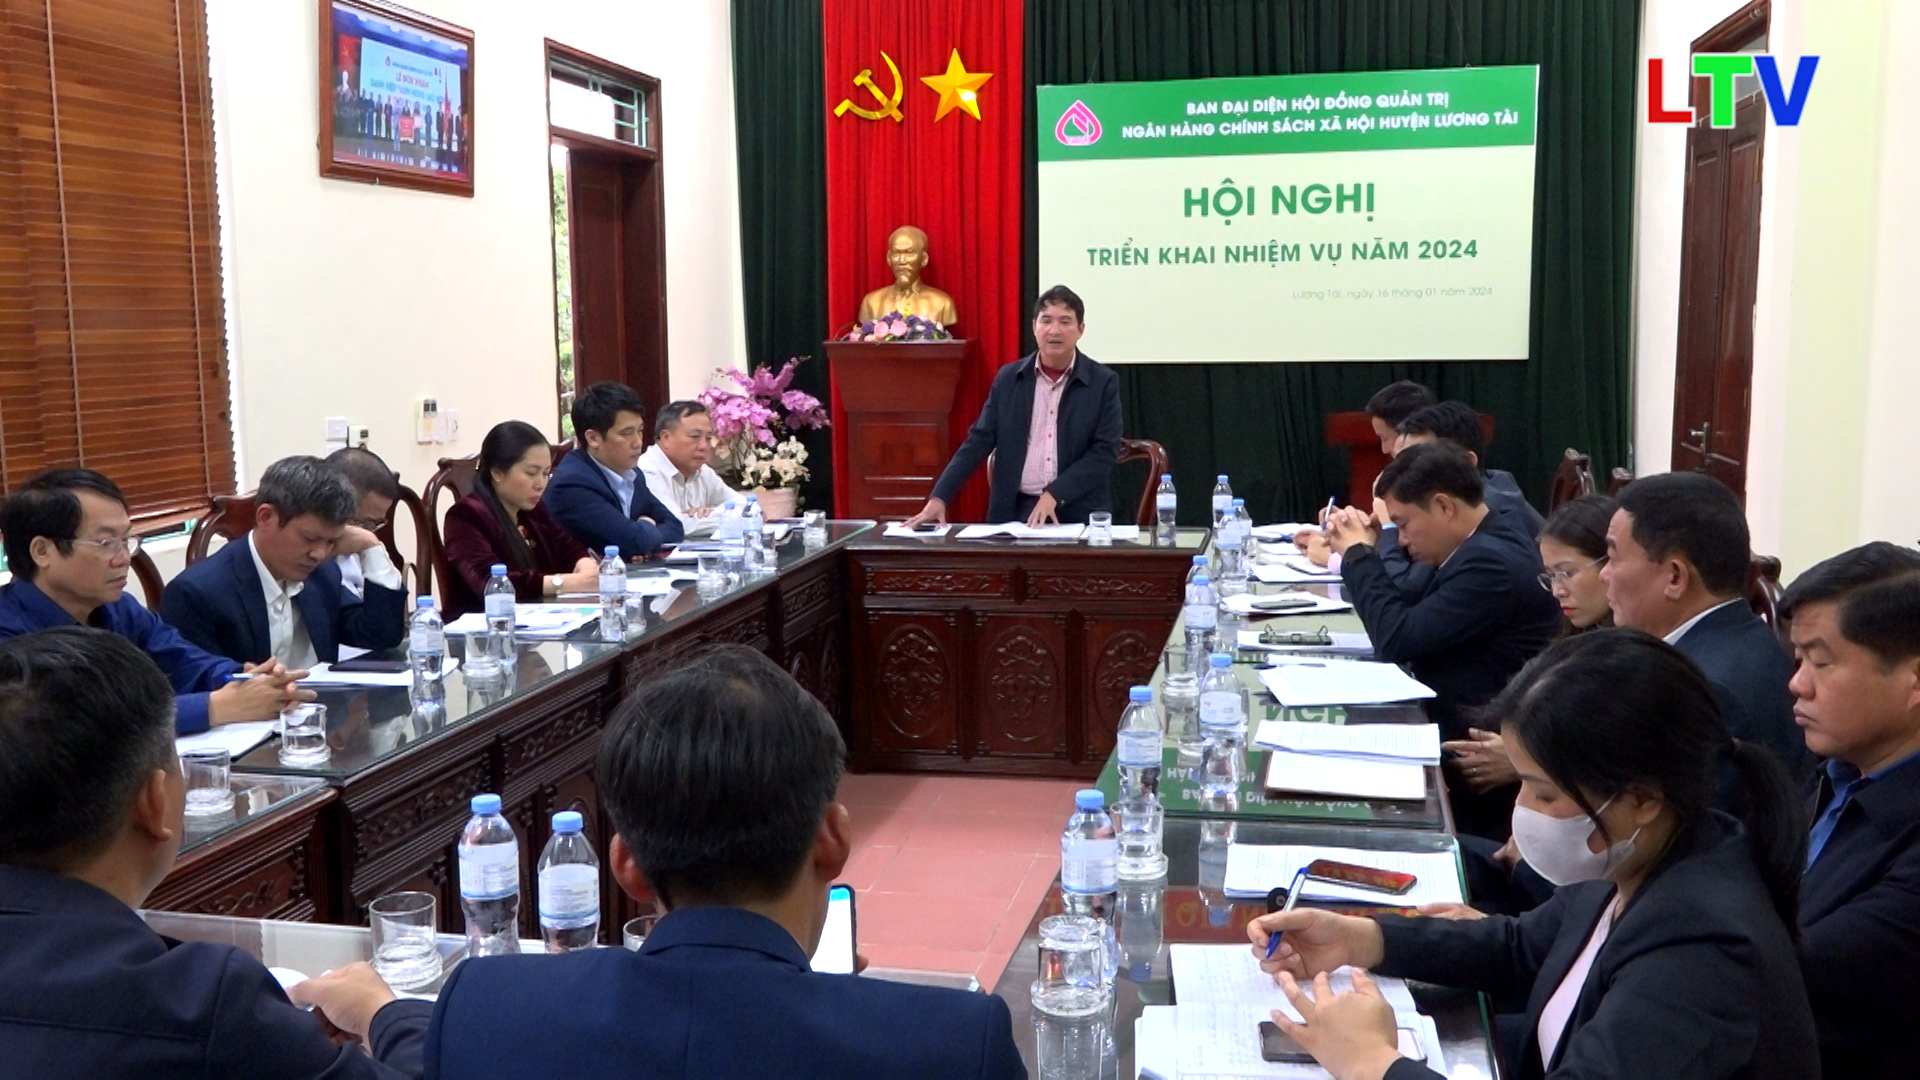 Ngân hàng CSXH huyện Lương Tài triển khai nhiệm vụ năm 2024.mp4